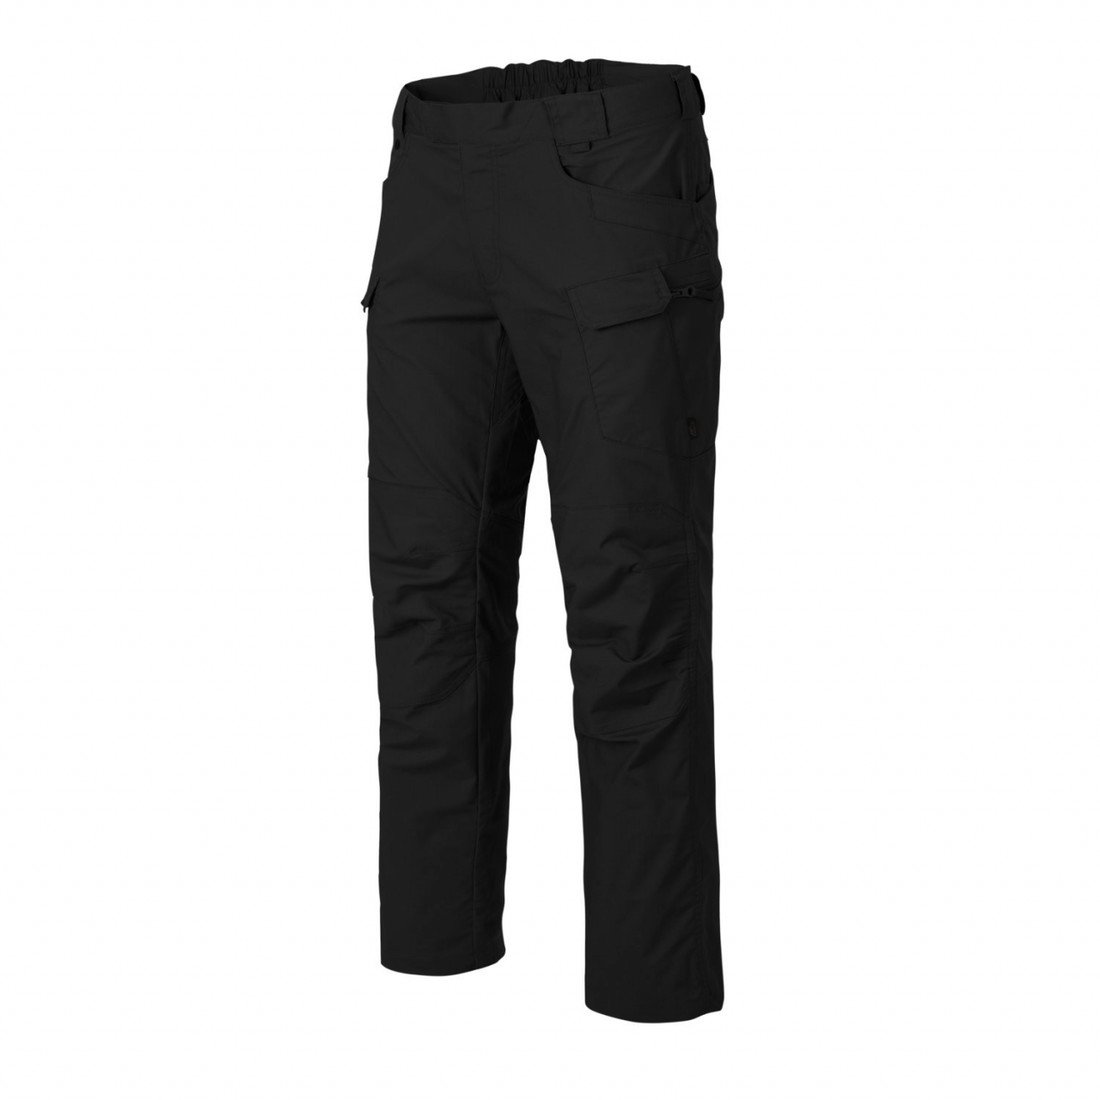 Kalhoty Helikon UTP PolyCotton Ripstop - černé, XL